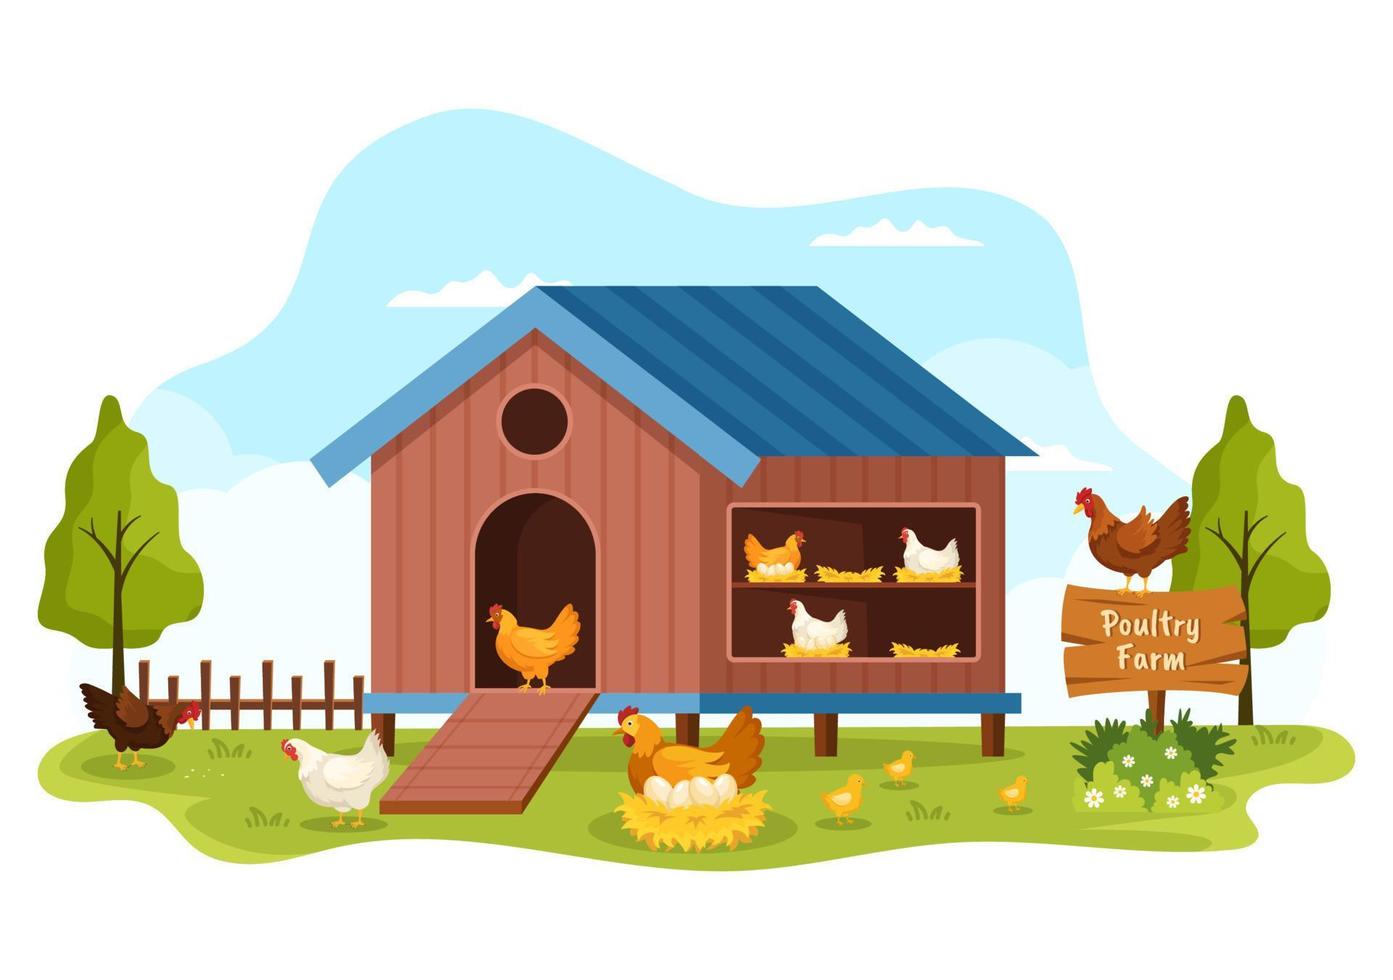 élevage de volailles avec agriculteur, cage, poulet et ferme d'oeufs sur fond de champ vert vue en illustration de modèle de dessin animé mignon dessiné à la main vecteur